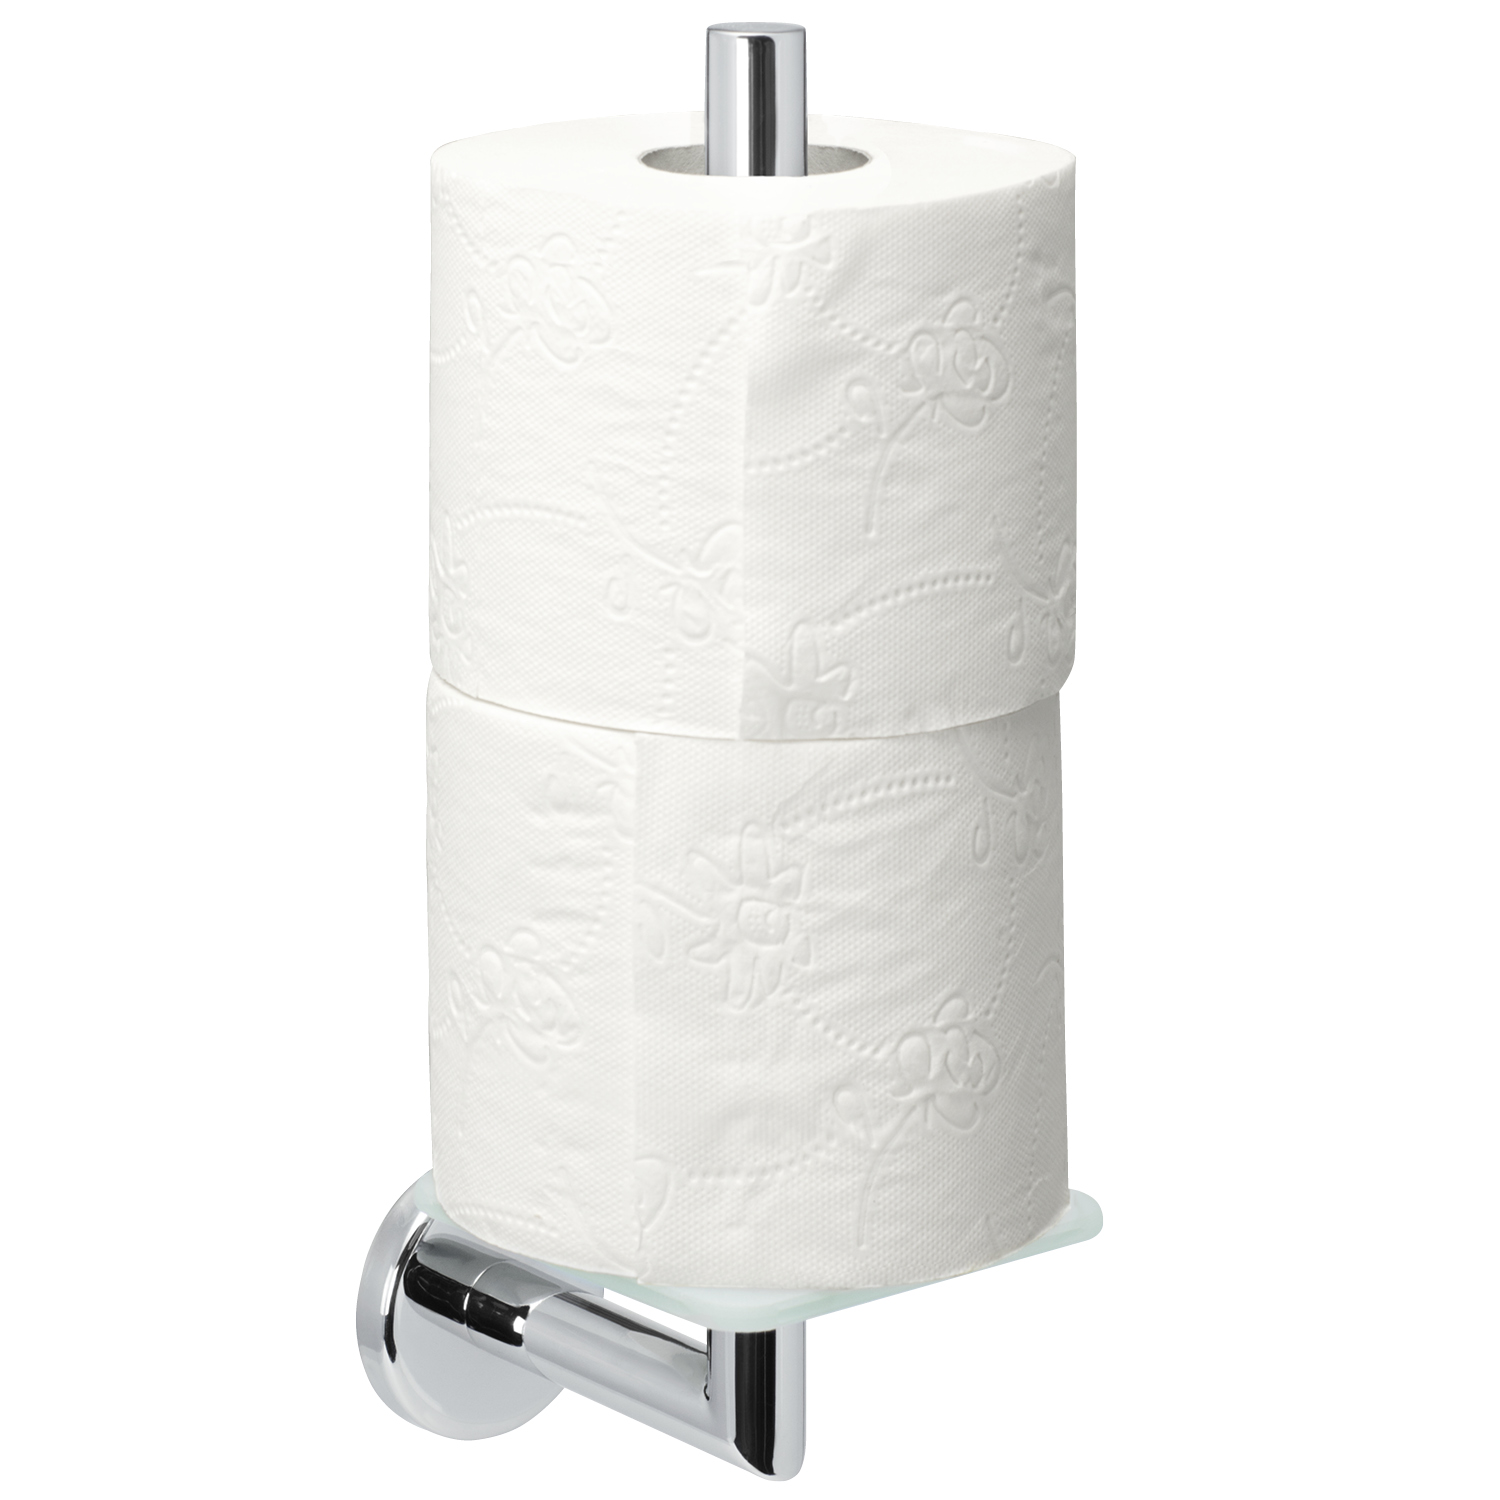 Bad-Serie LUCENTE - Ersatz-Toilettenpapierhalter aus Edelstahl verchromt, hochglänzend mit Glasboden